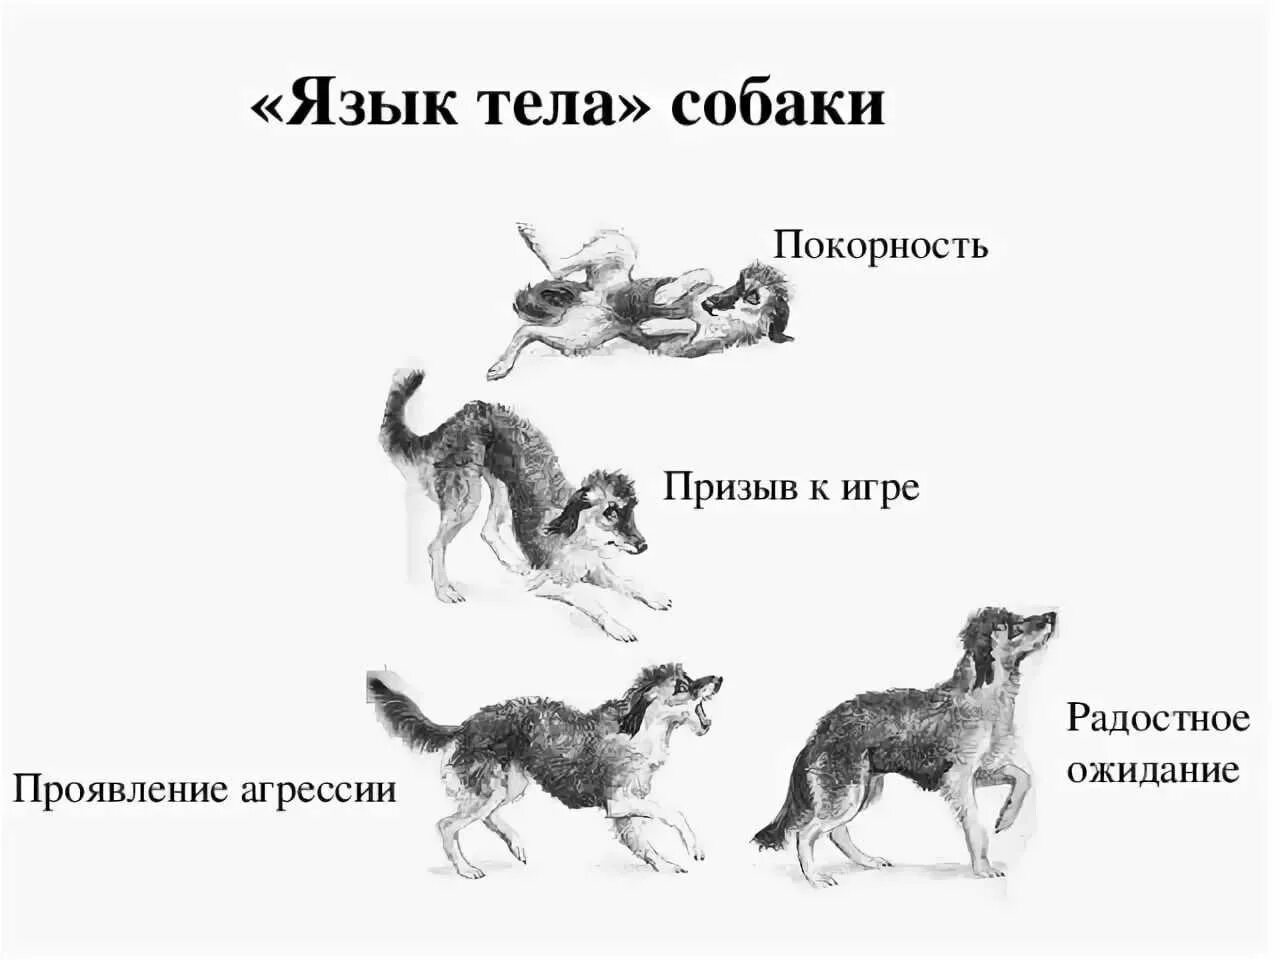 Поведение собак. Язык тела собаки в картинках. Араедение собак. Виды поведения собак. Признаки доминирования собаки